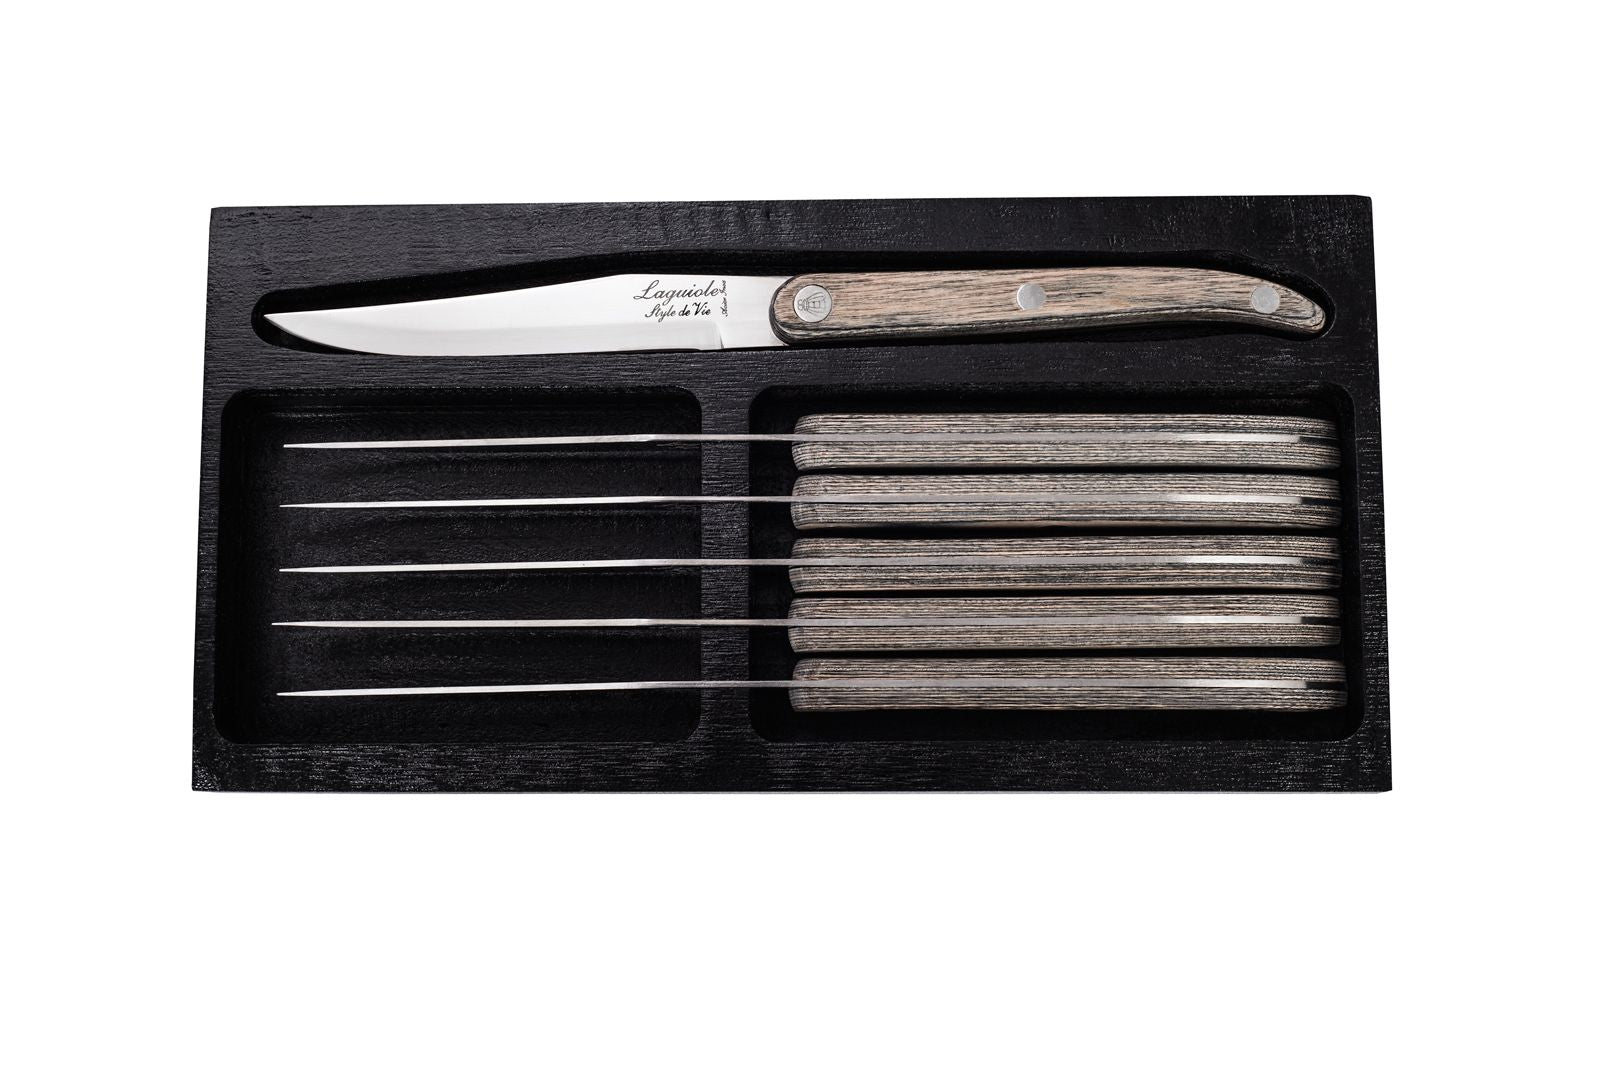 Estilo de Vie Authentique Laguiole Innovation Line Kneak Knives de 6 piezas, pakka gris con cuchilla suave